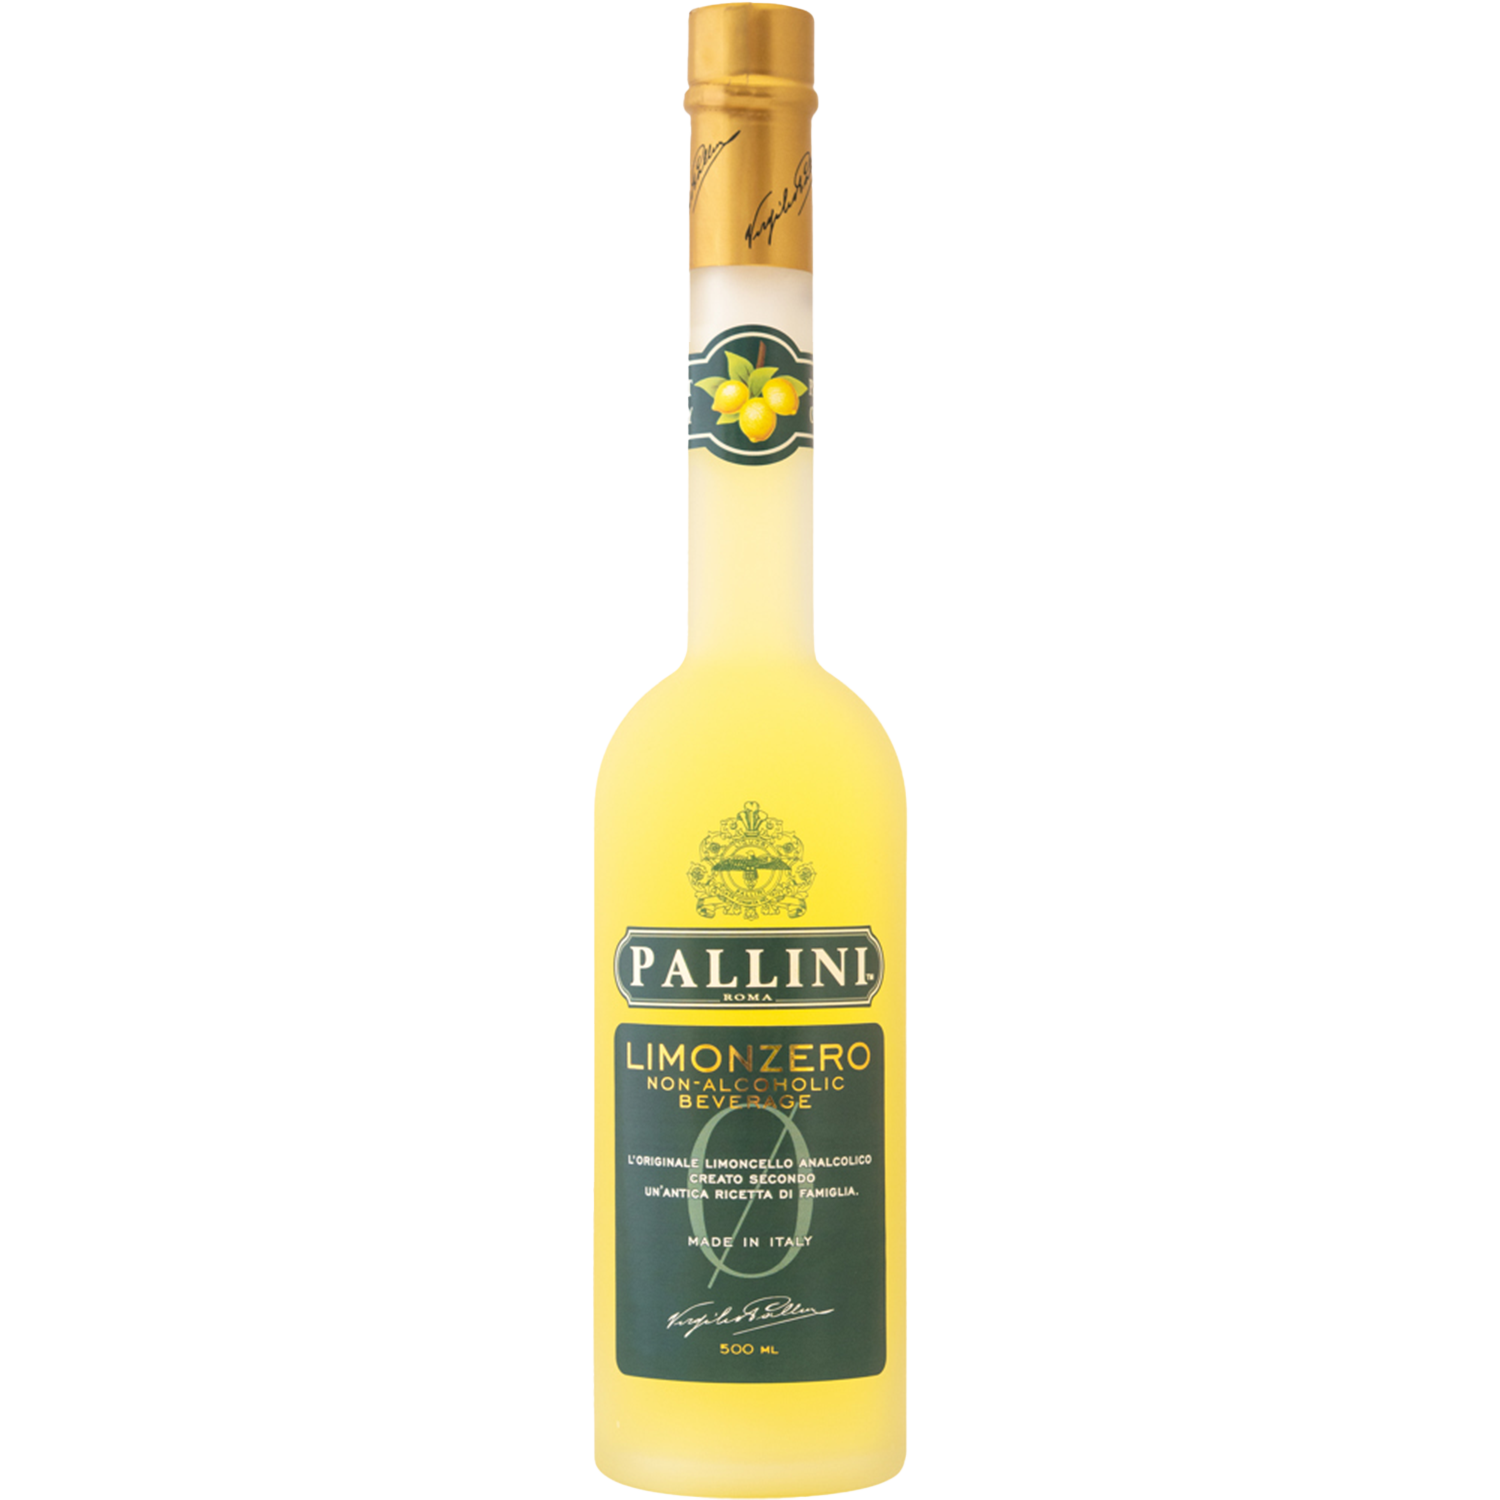 Pallini Limonzero (non-alcoholic limonchello)